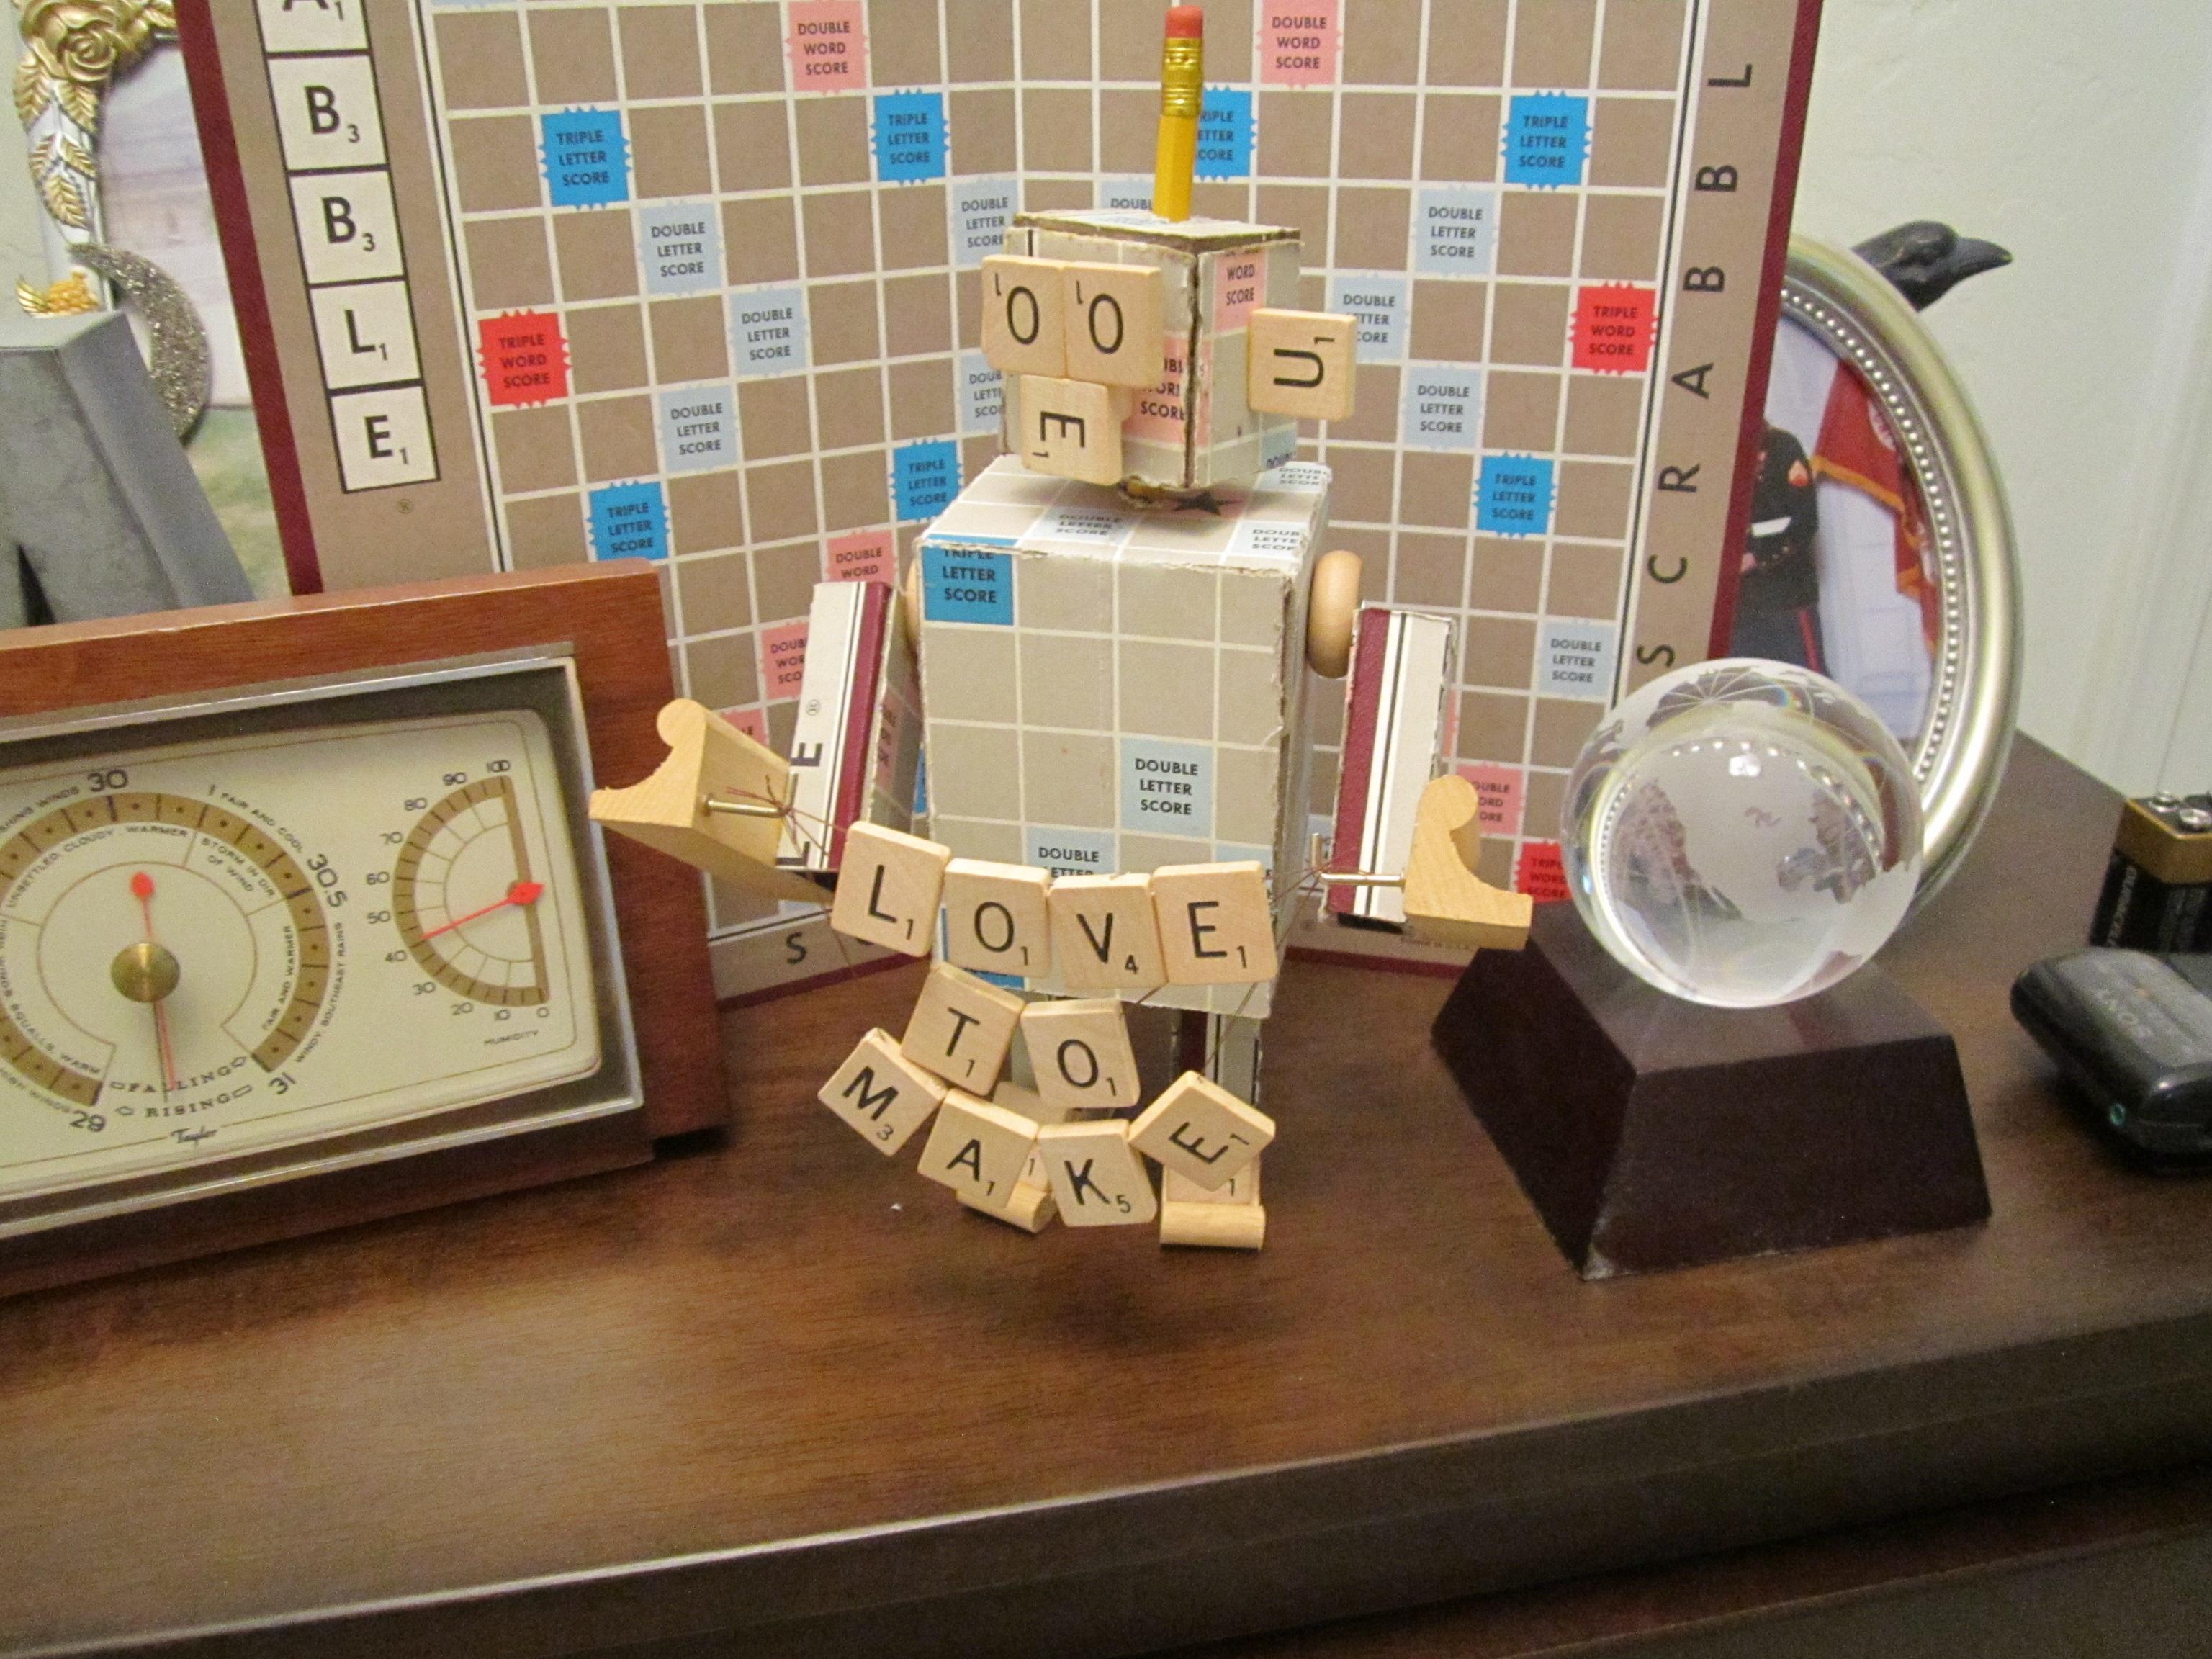 Meet 'OOE' the Scrabble Robot